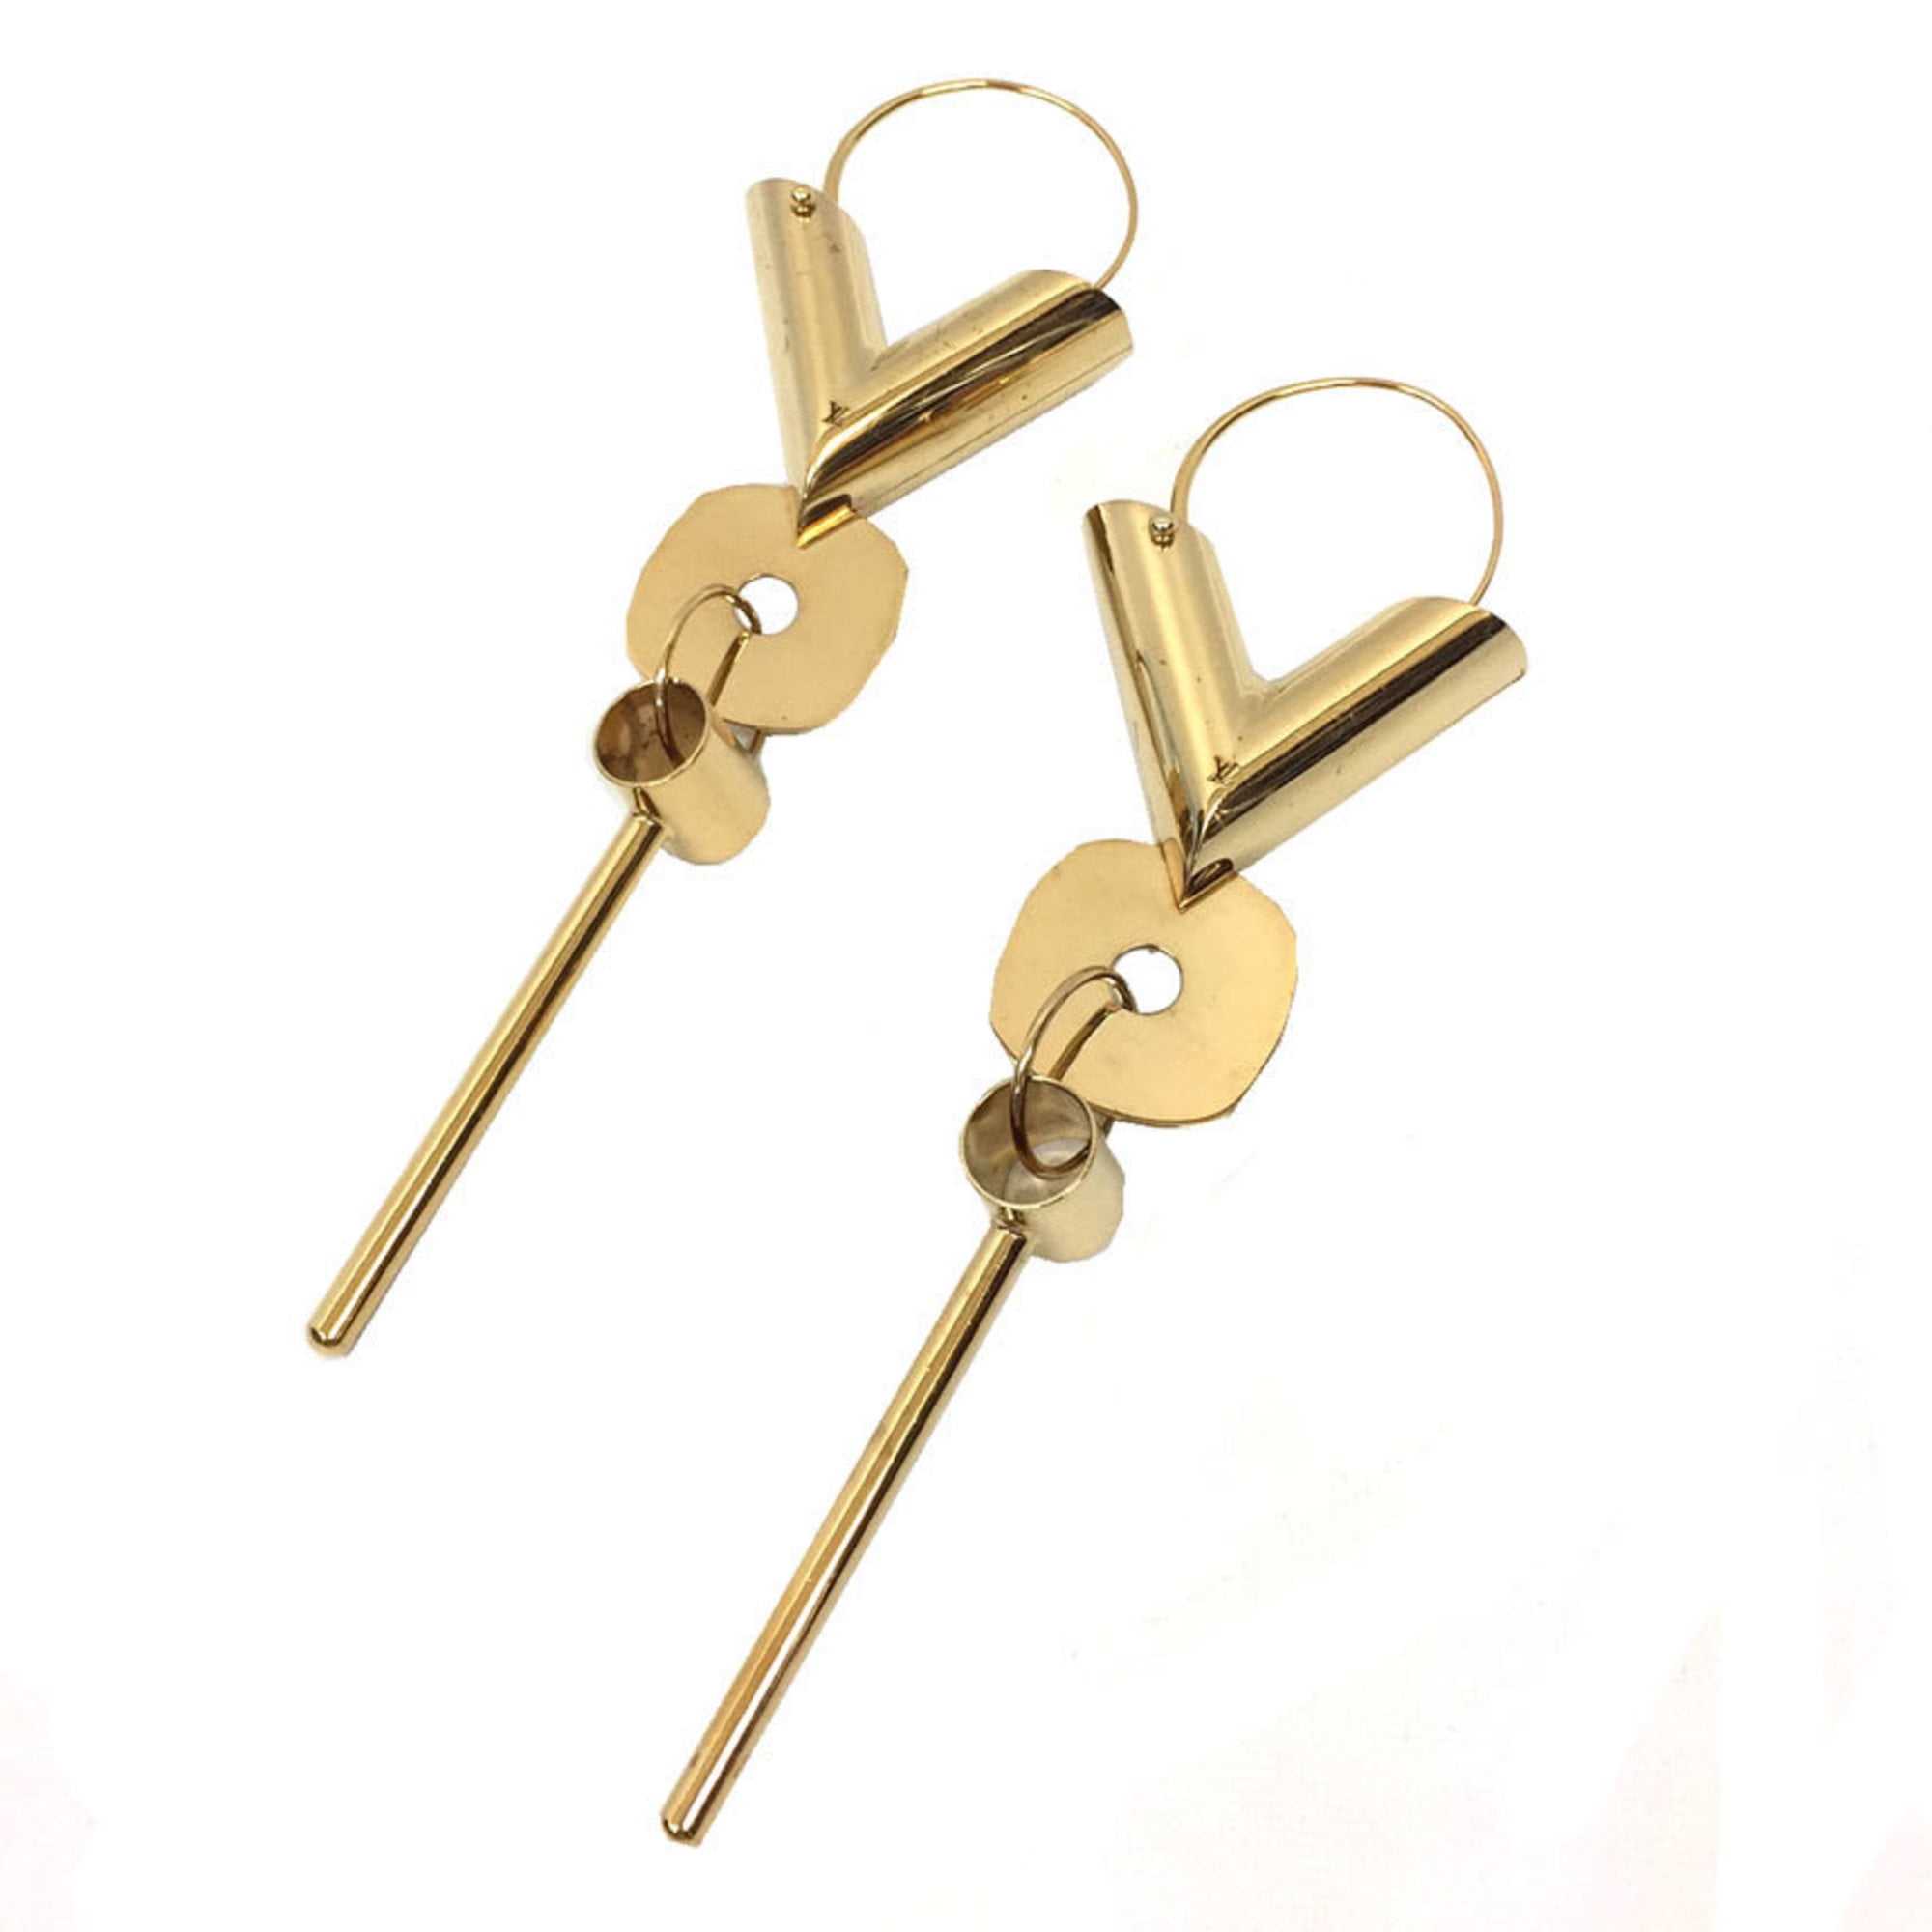 V STRASS Hoop Earrings by Louis Vuitton #earrings #goldearrings # louisvuitton #louisvuittonearrings #jewelperspect…